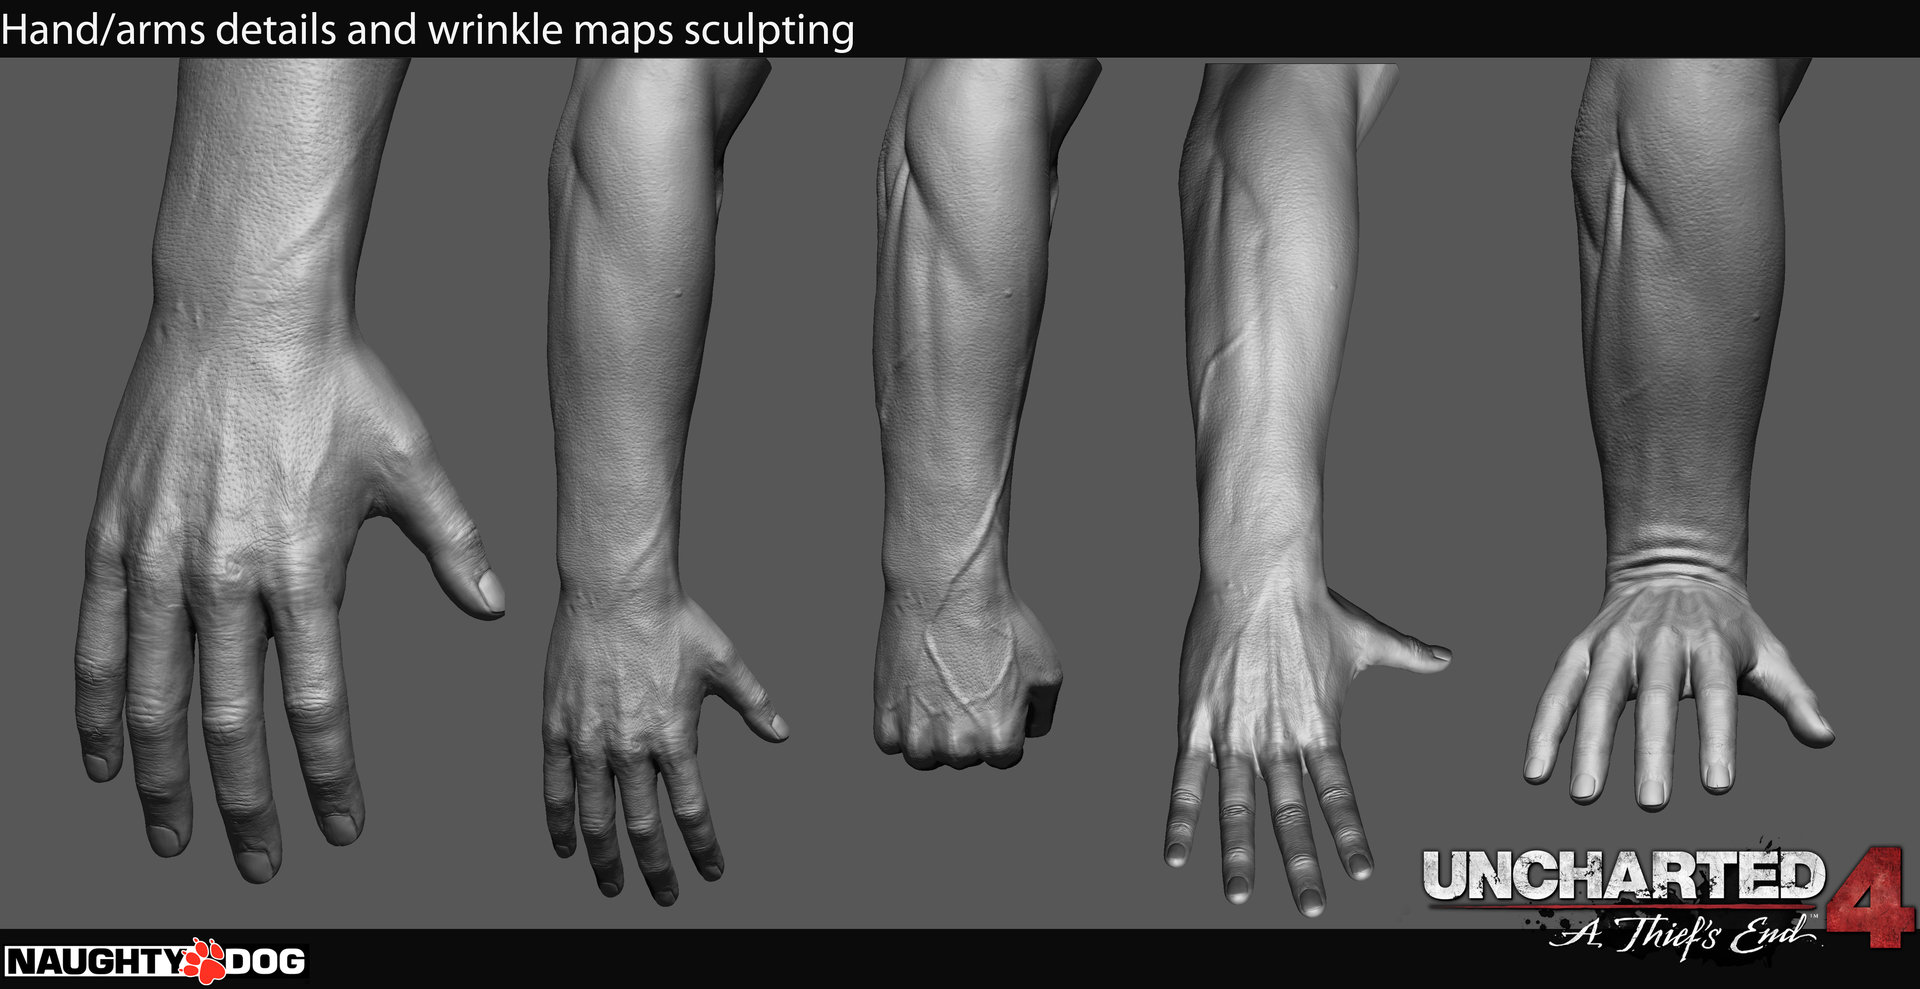 frank-tzeng-hand-wrinkle-maps-details.jpg